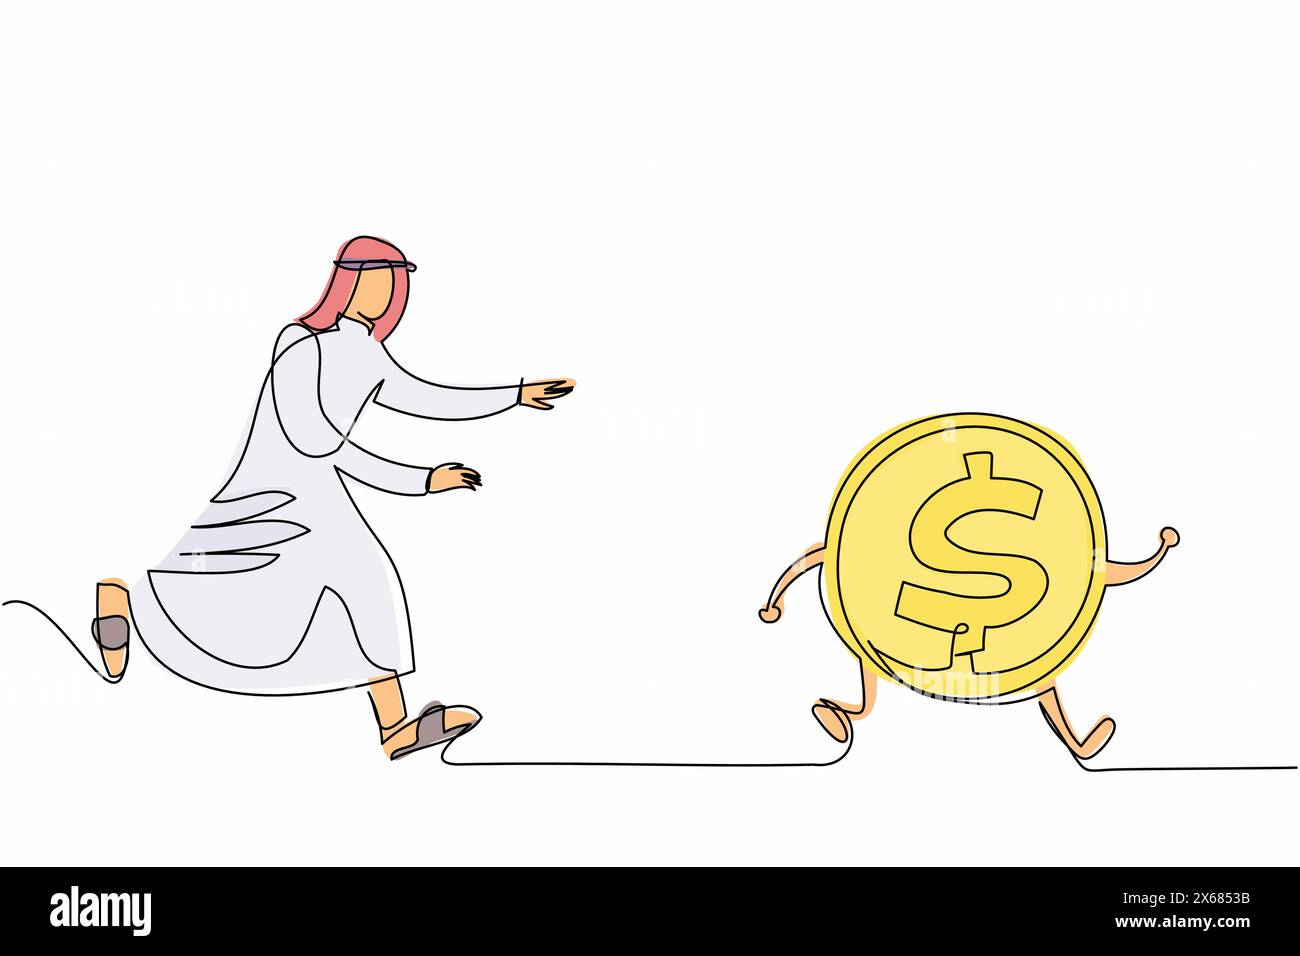 Linea singola continua che disegna un uomo d'affari arabo che insegue la moneta da un dollaro. Lottare per il successo, inseguire i sogni, fare profitti. Procurati quanti più soldi possibile Illustrazione Vettoriale